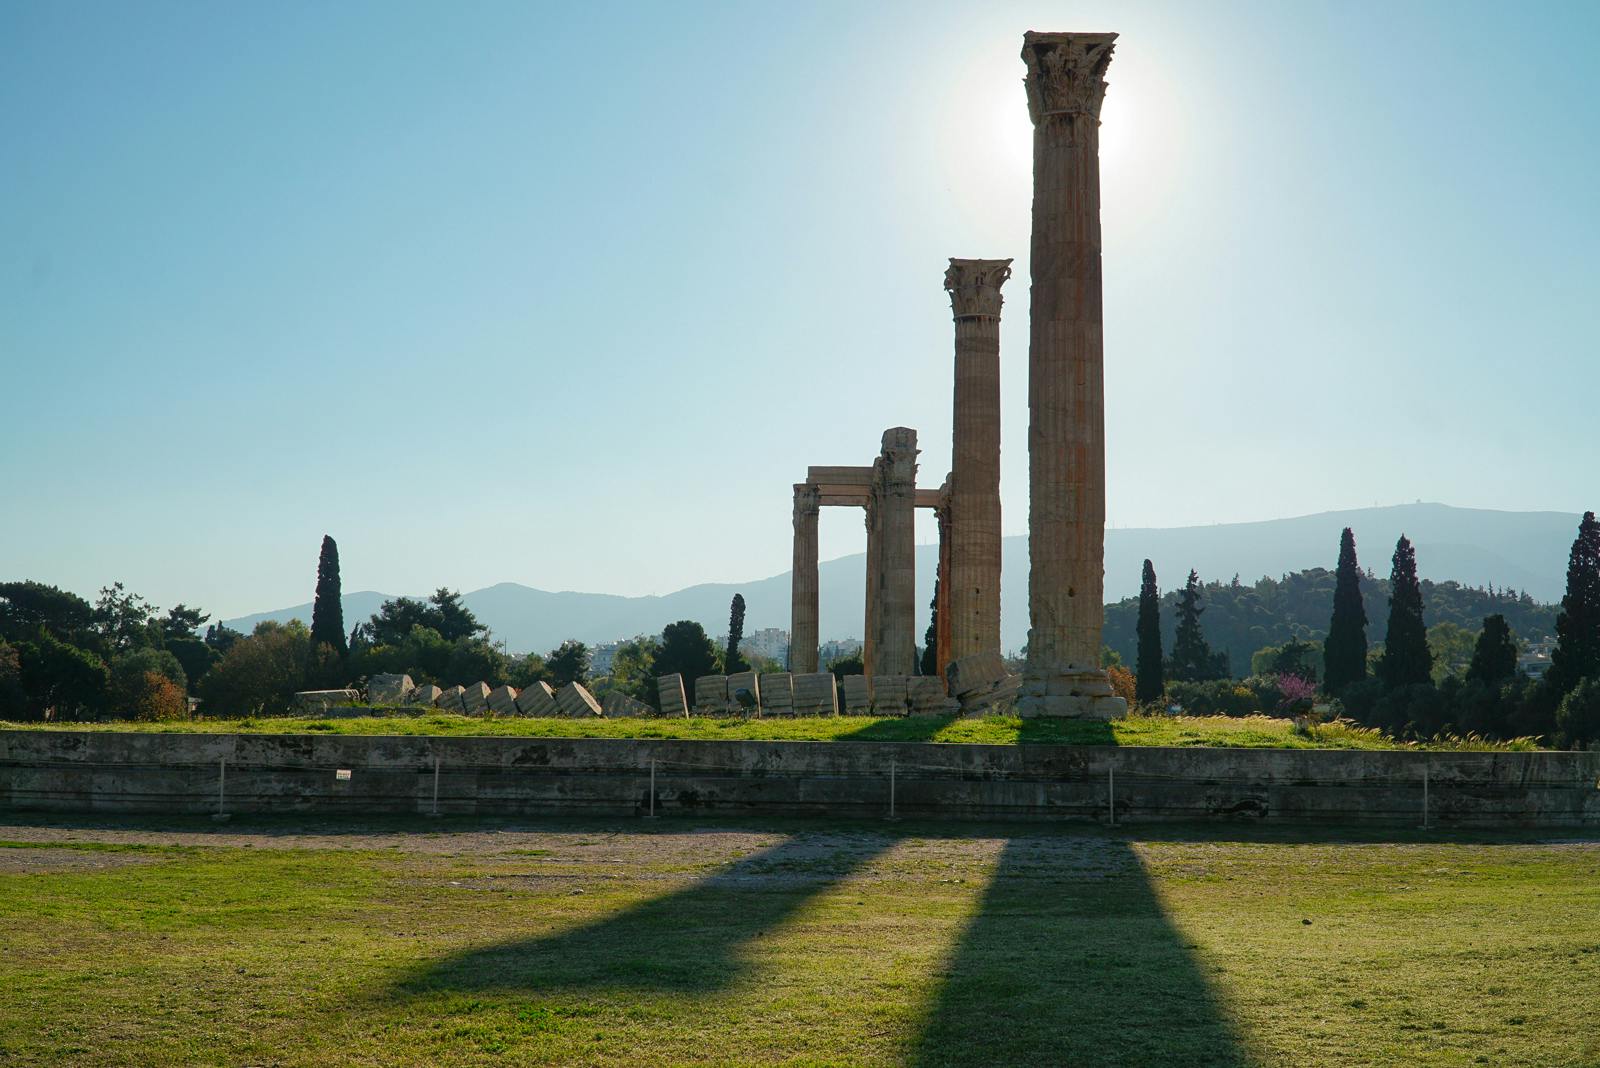 Audiotour durch den Tempel des Olympischen Zeus von Athen